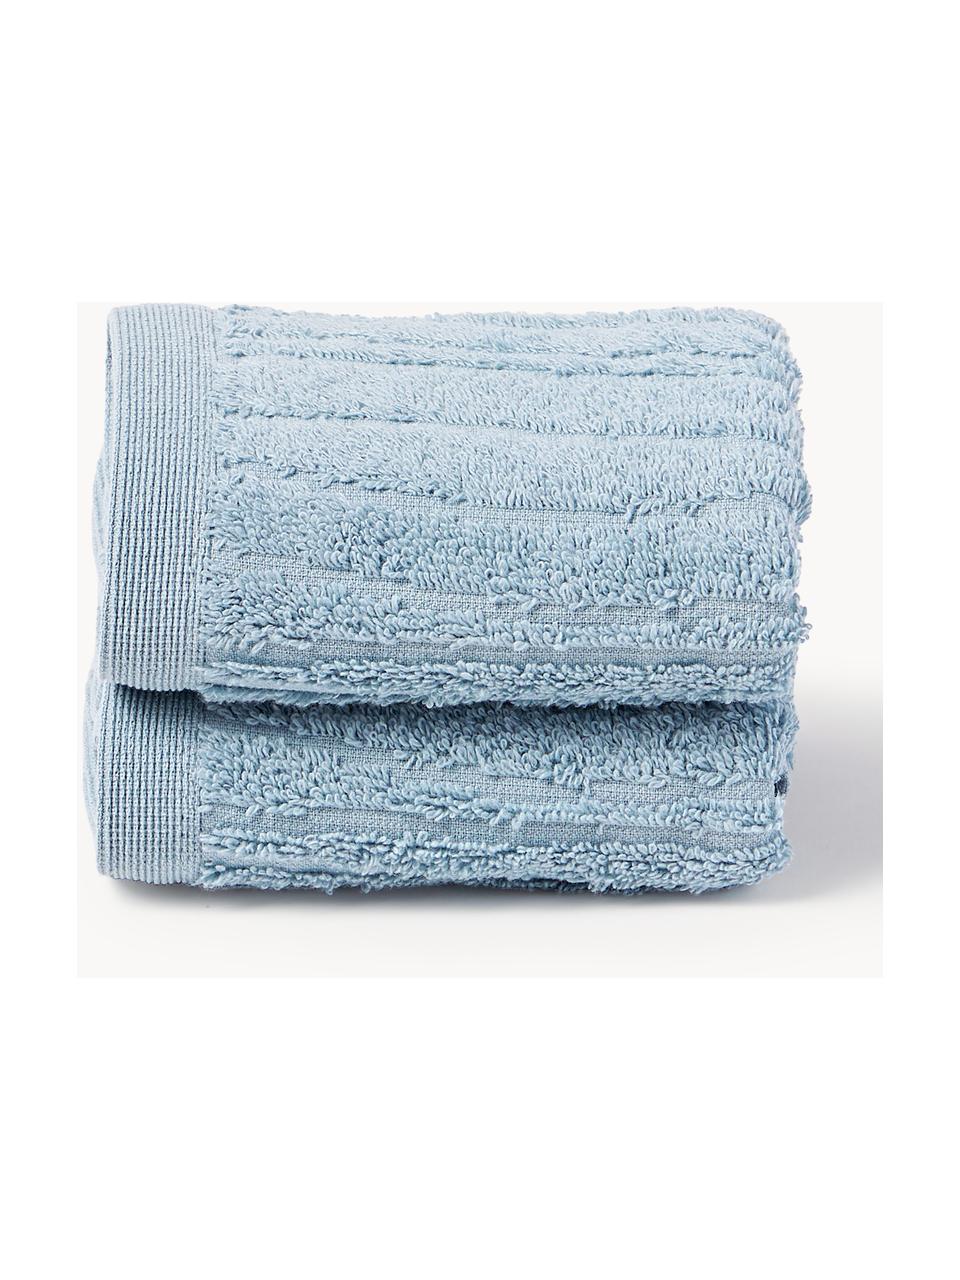 Asciugamano Audrina, varie misure, Grigio-blu, Asciugamano, Larg. 50 x Lung. 100 cm, 2 pz